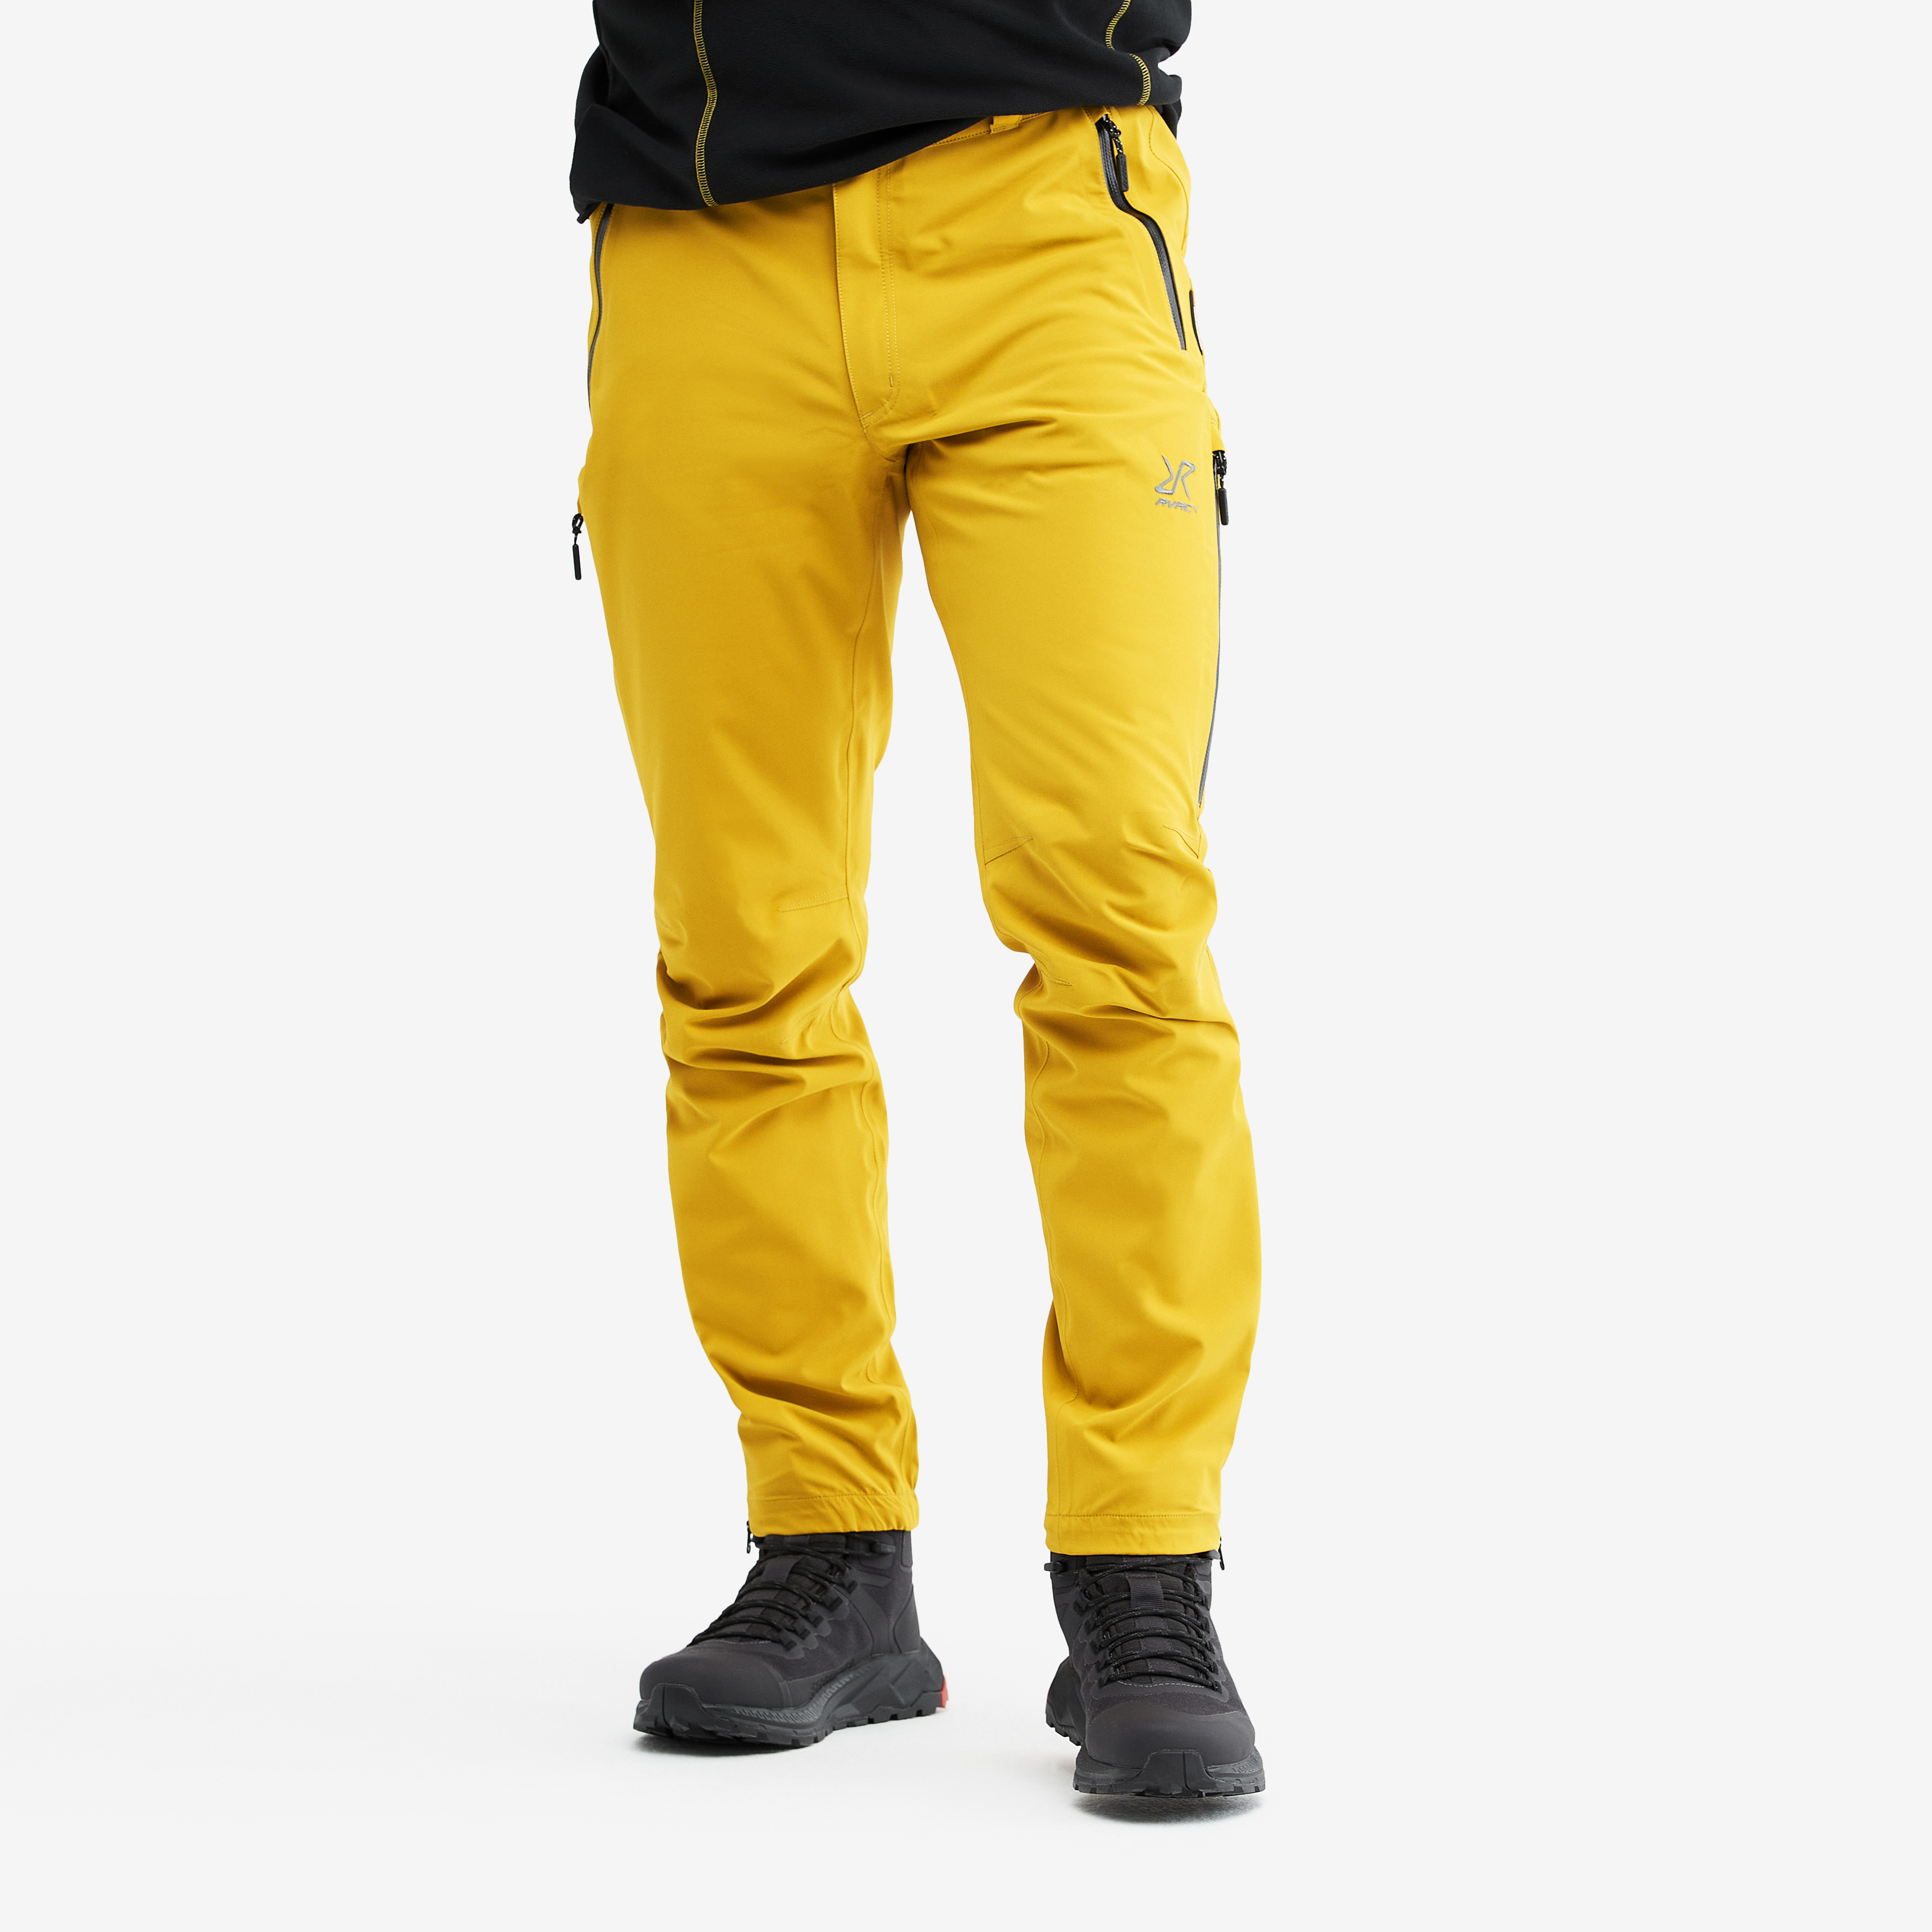 Whisper waterproof trousers for men in yellow